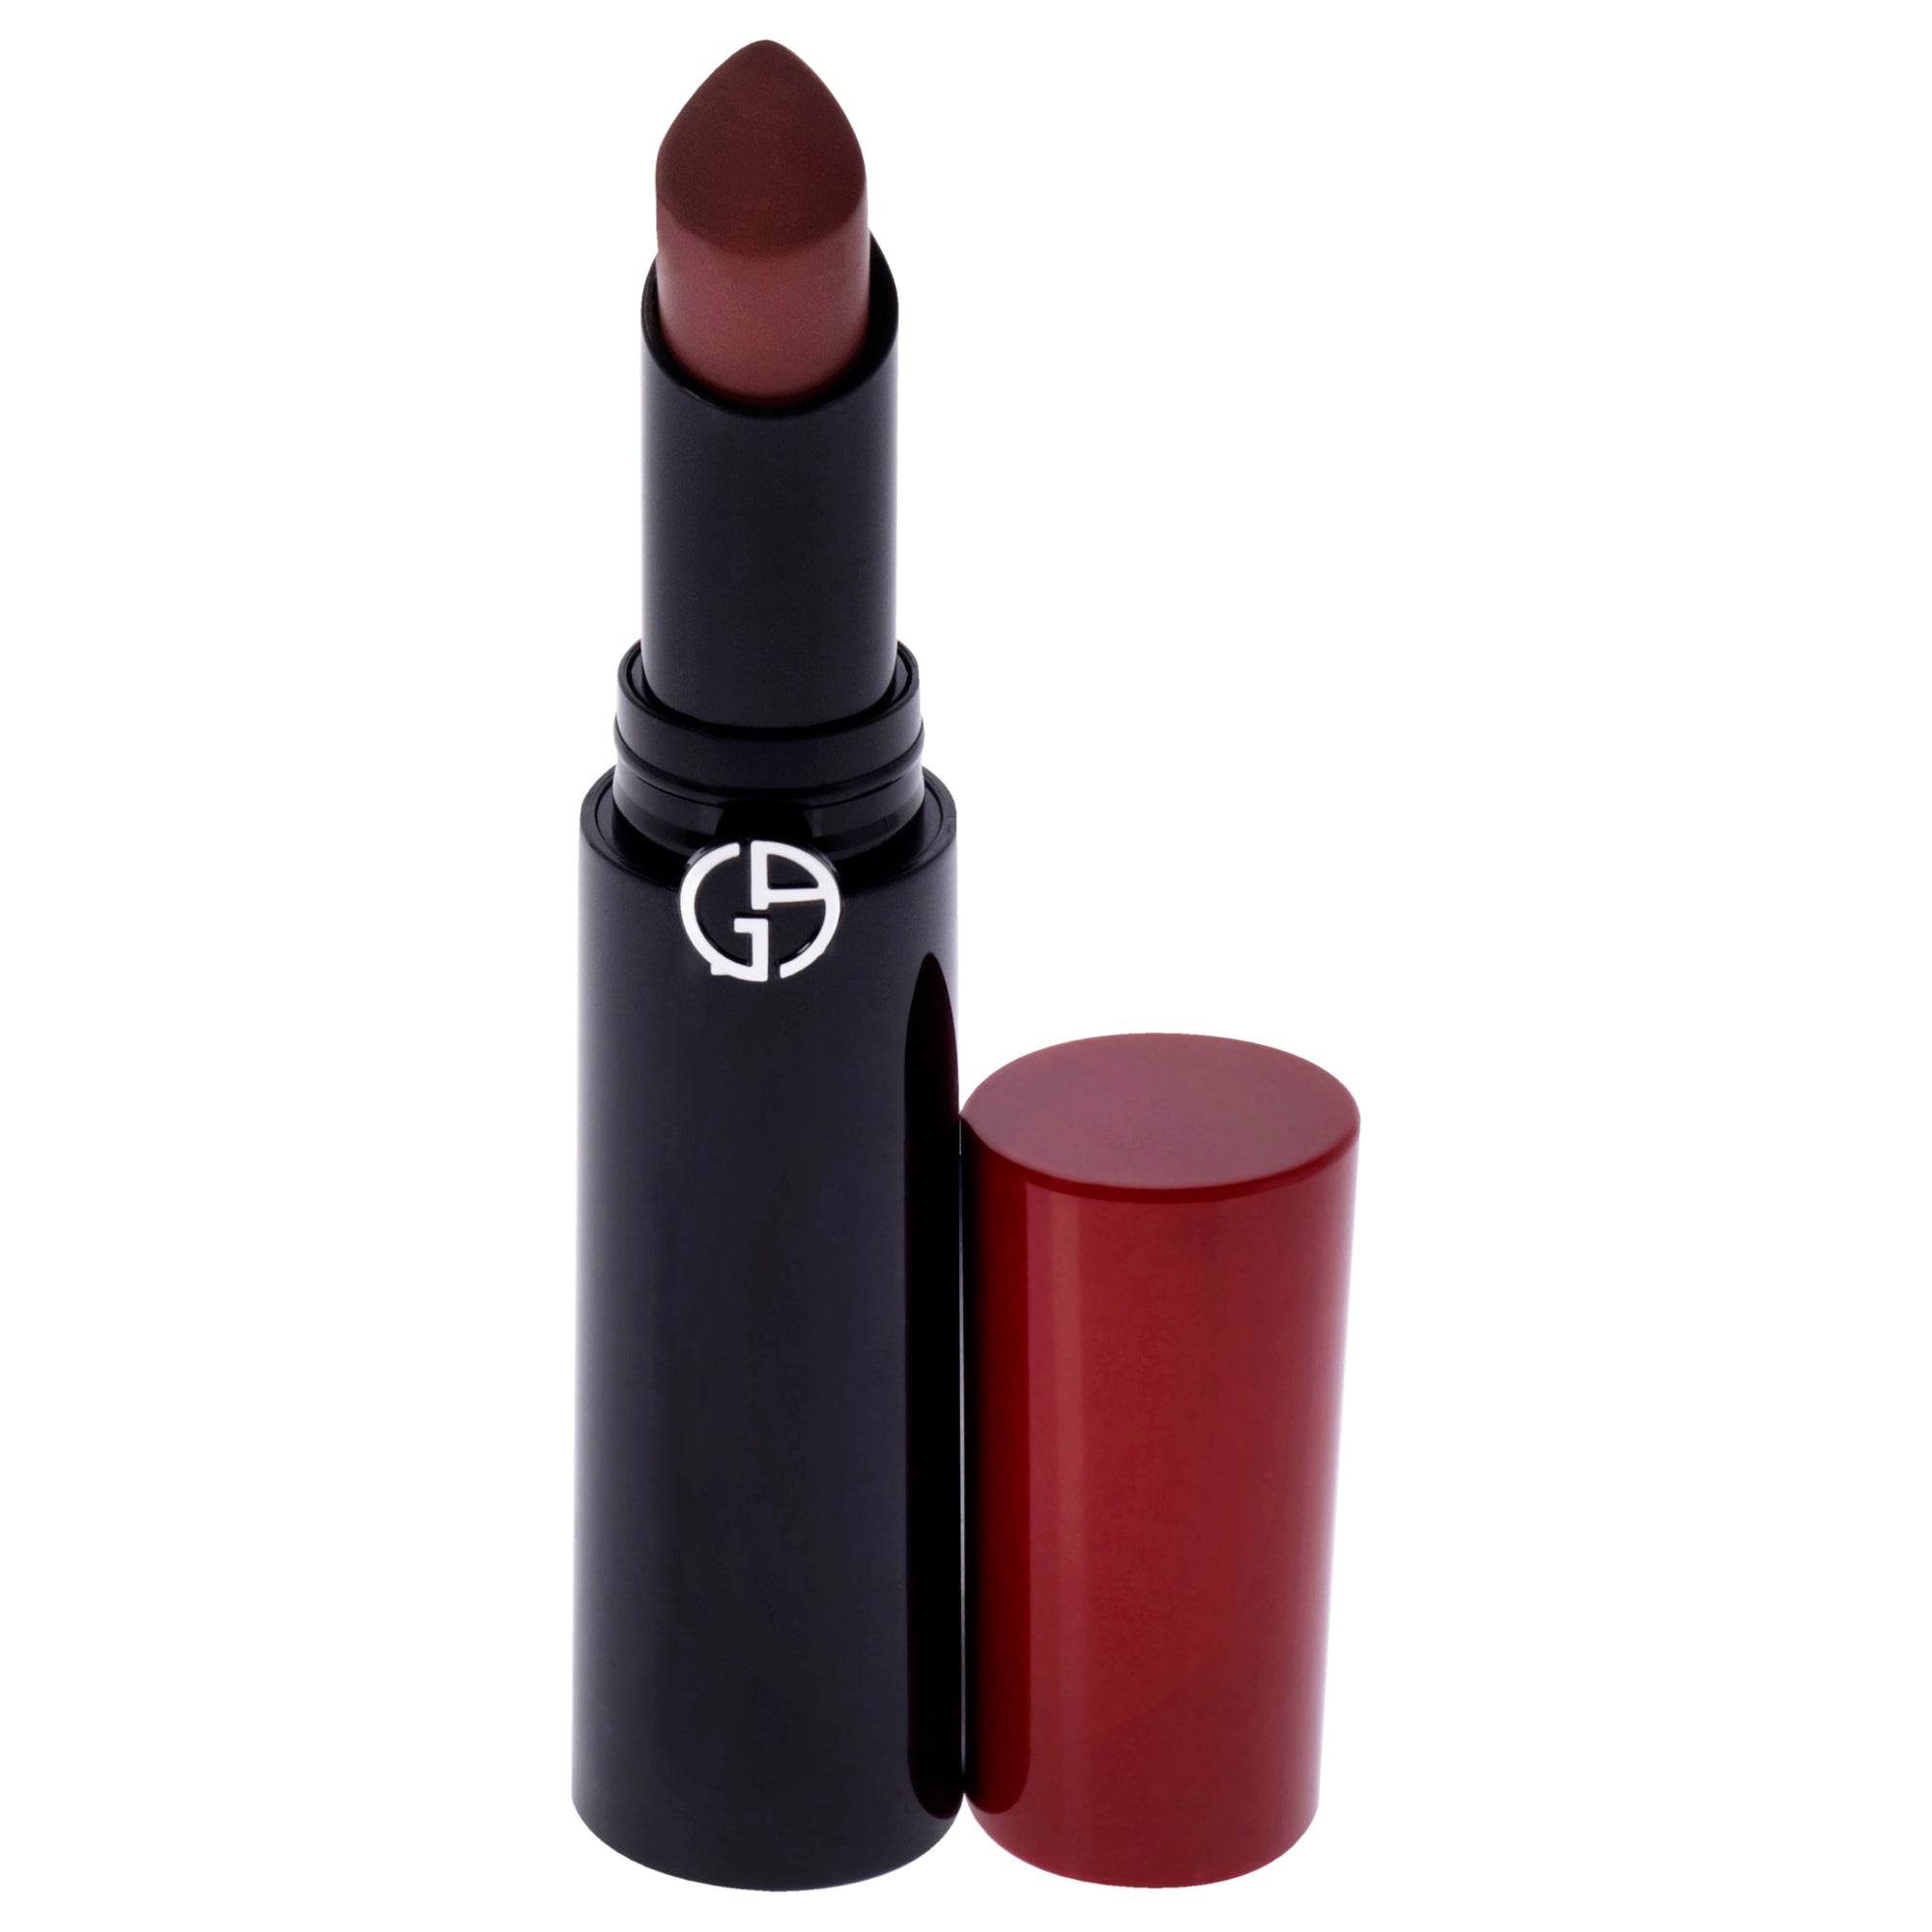 Lip Power Longwear Vivid Color Lipstick - 203 Mystery by Giorgio Armani for Women - 0.11 oz Lipstick